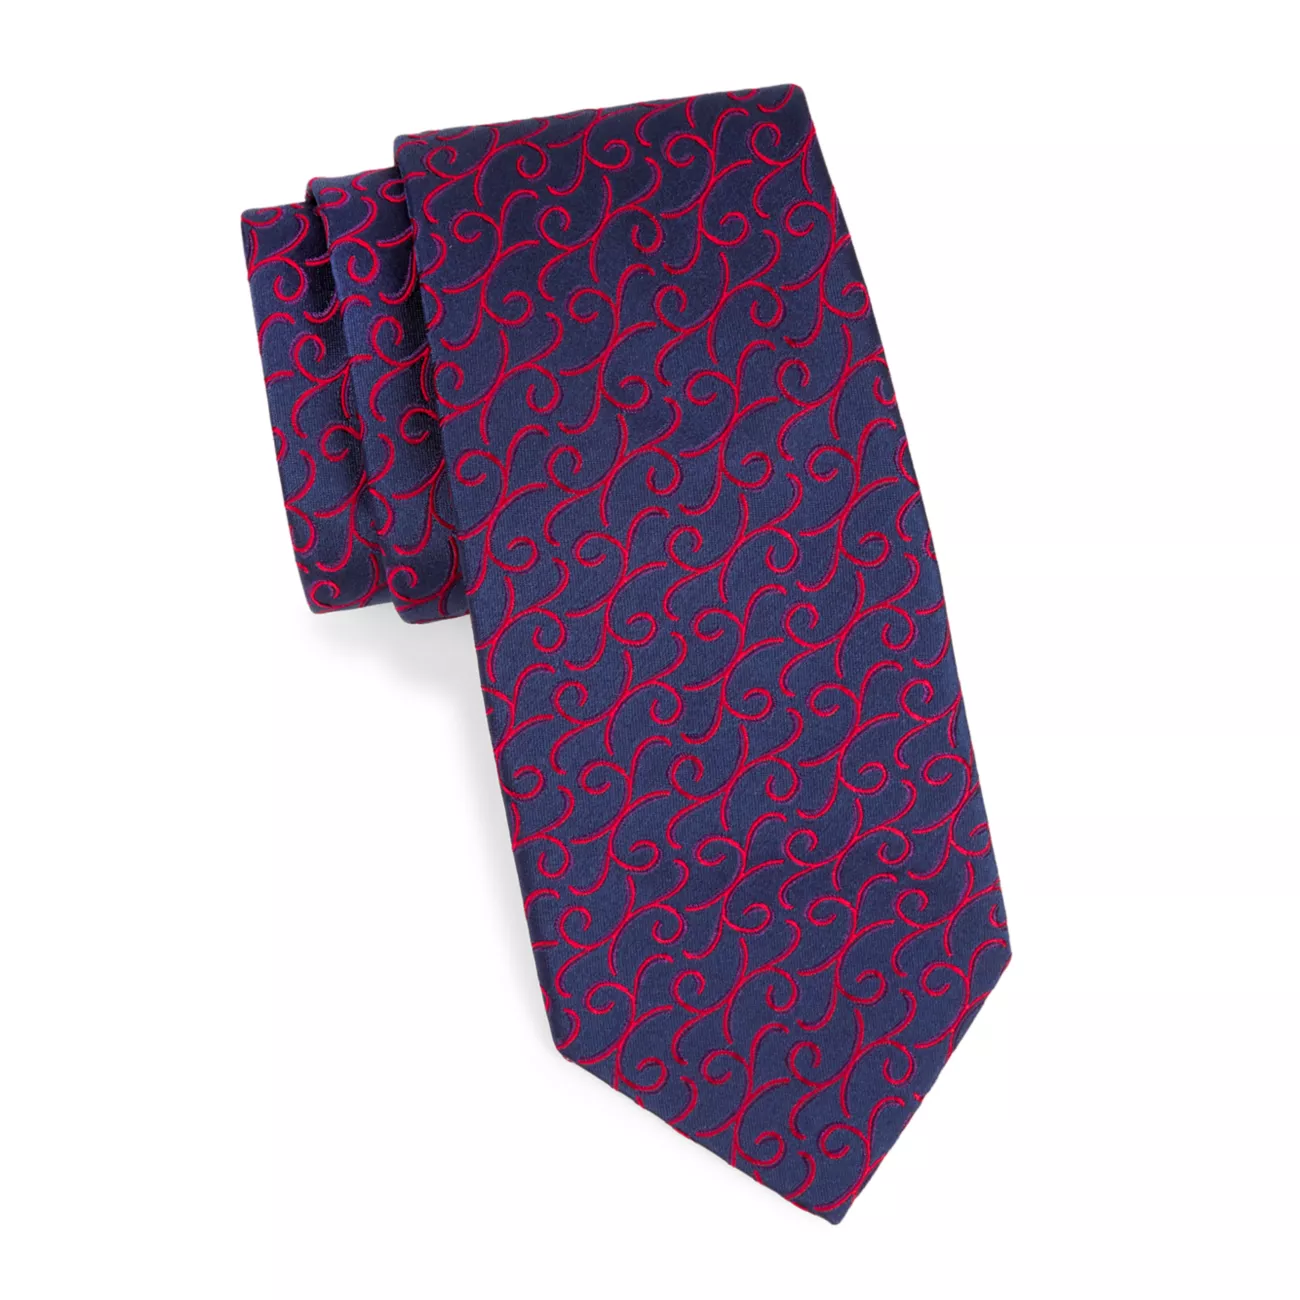 Аккуратный шелковый галстук New с узором пейсли Charvet